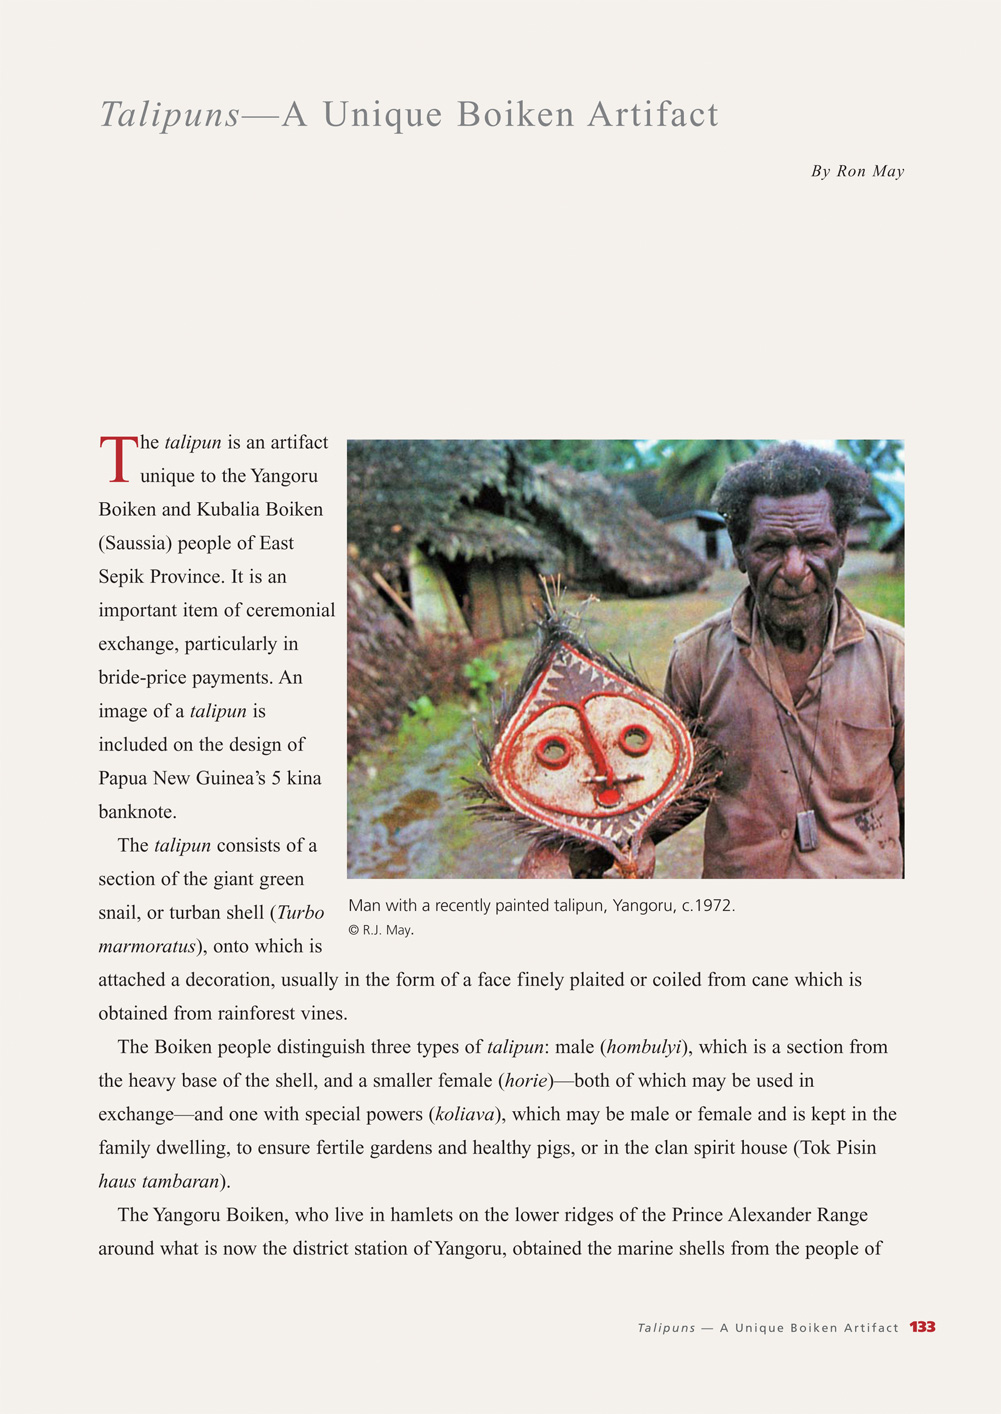 Art of the Boiken New Guinea Oceanic Art